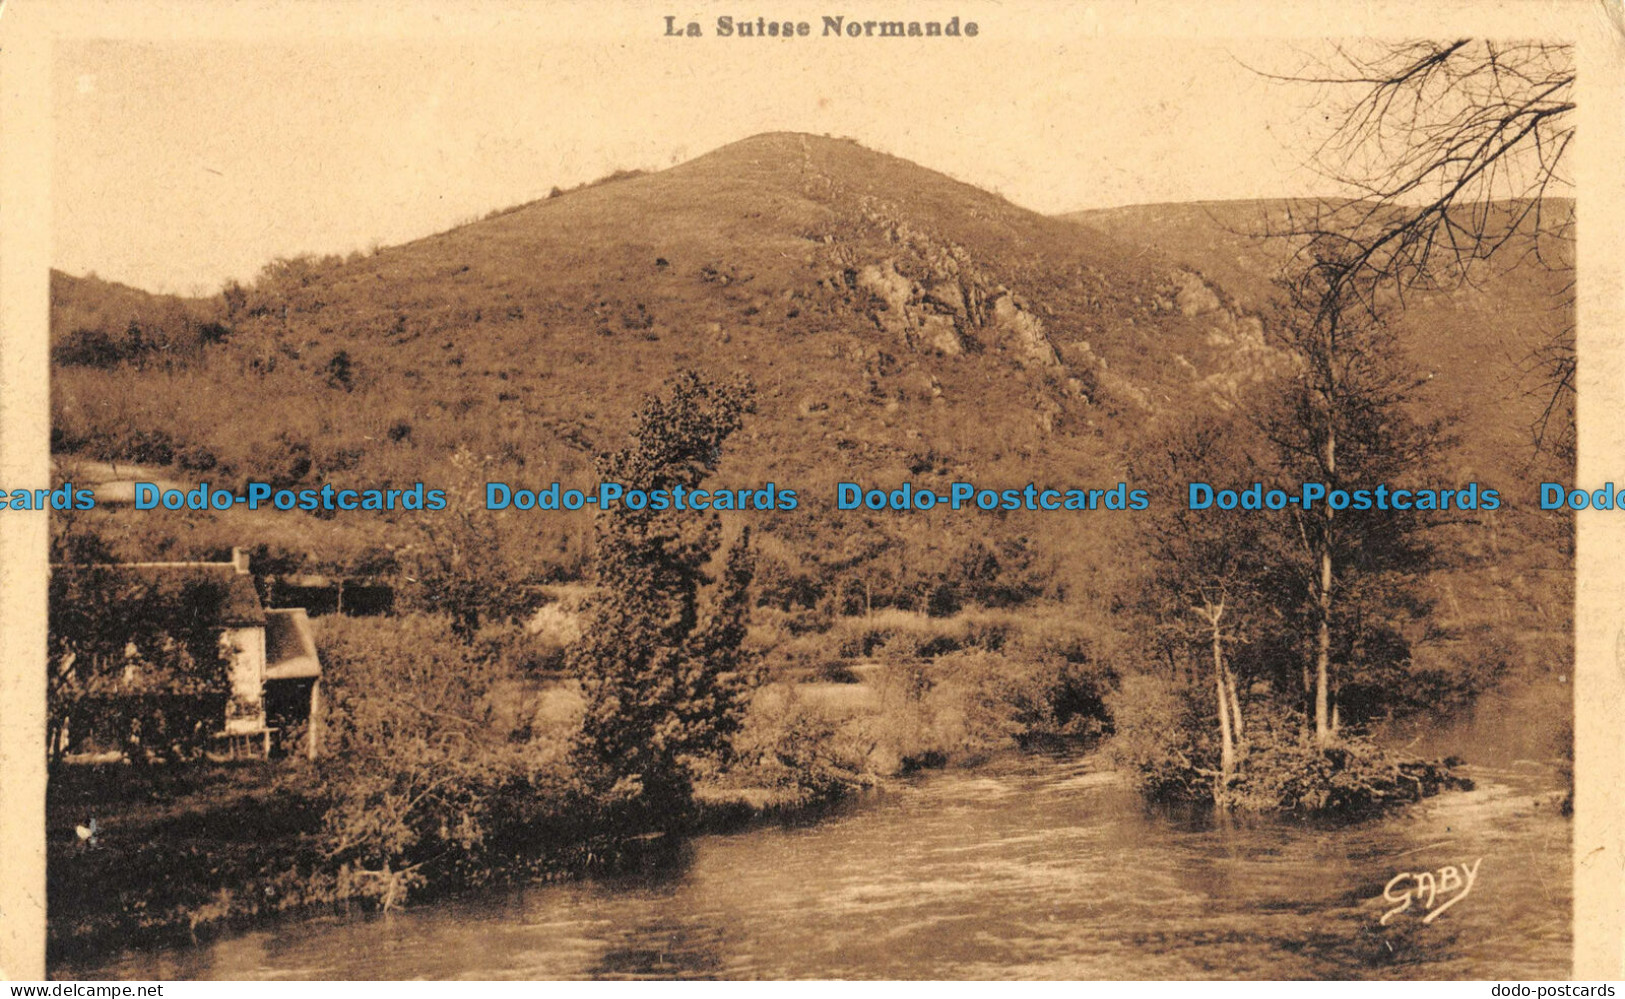 R052285 La Suisse Normande. G. Artaud. Gaby - World